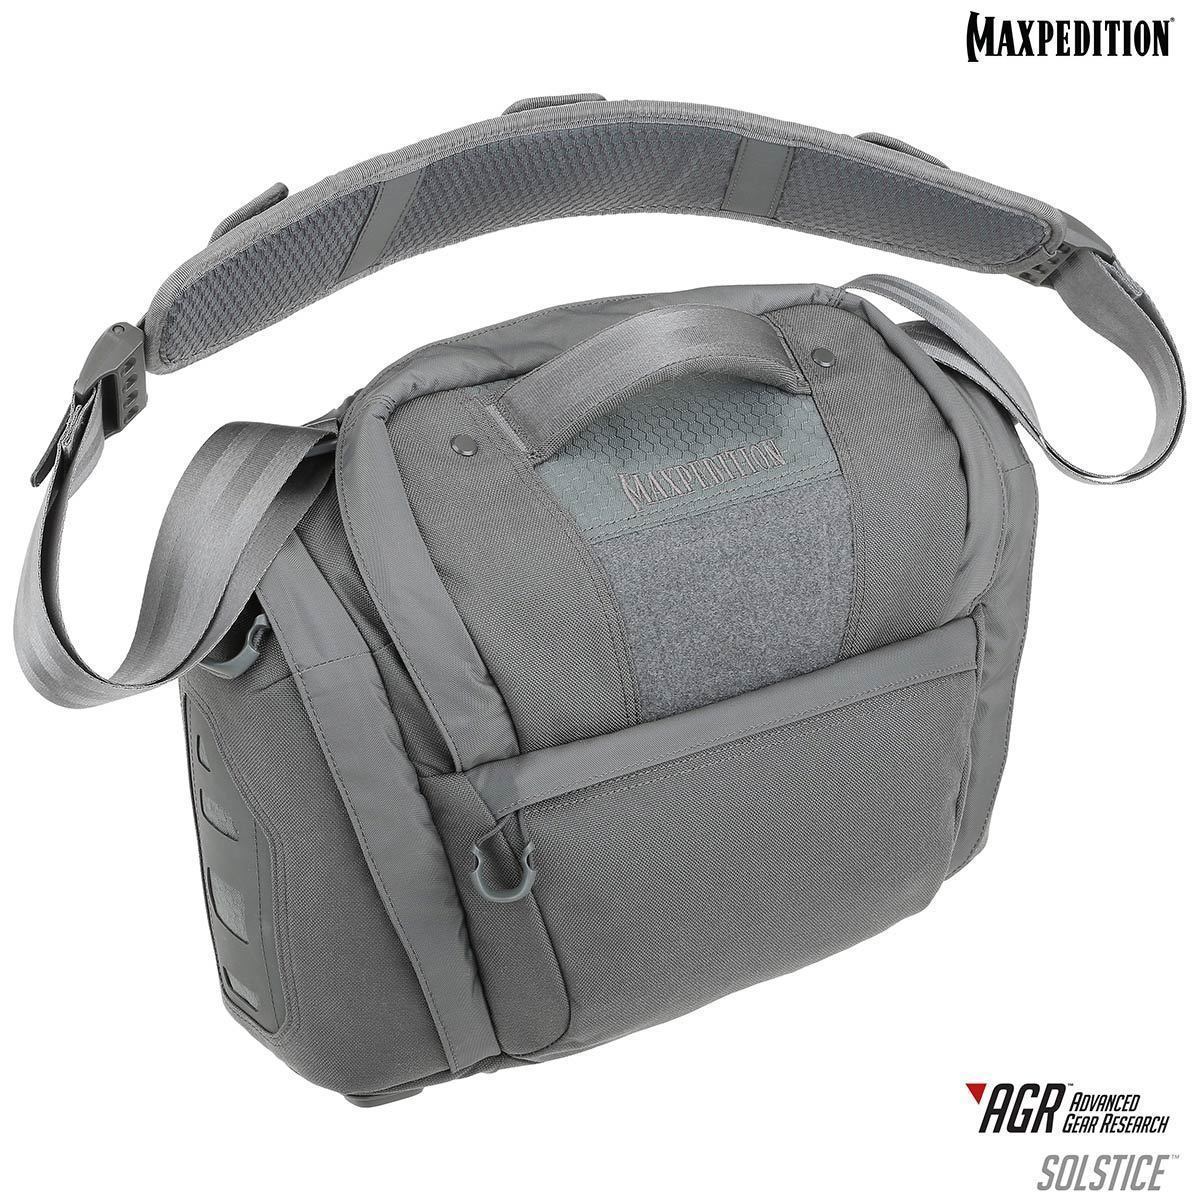 Solstice™ CCW Camera Bag | Maxpedition Tactical Gear